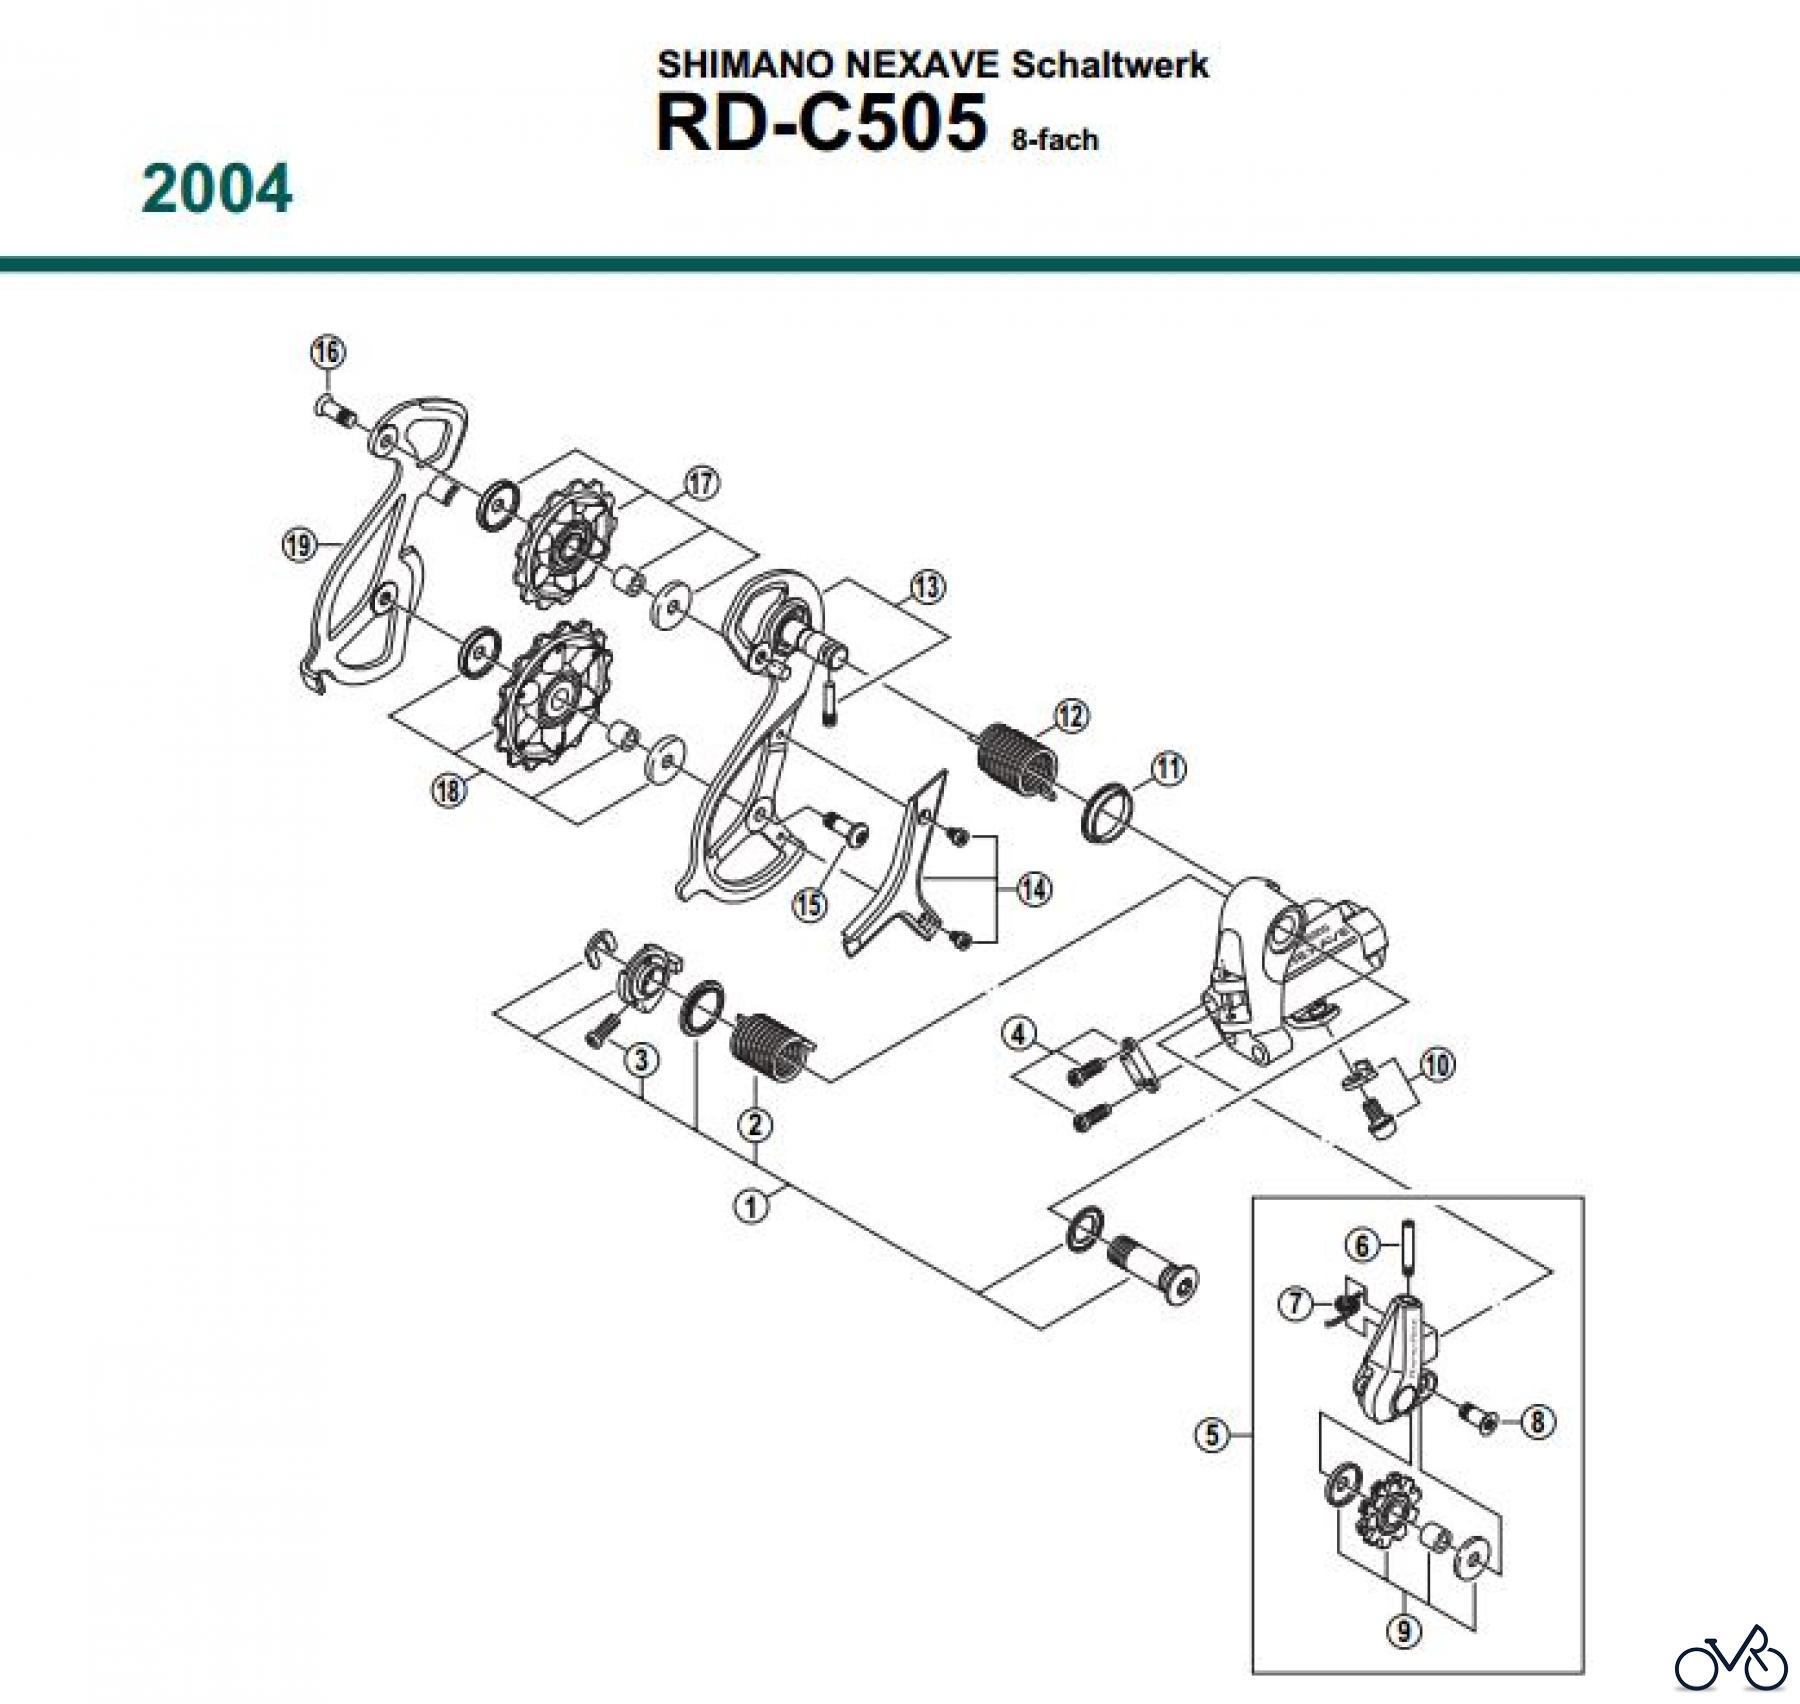  Shimano RD Rear Derailleur - Schaltwerk RD-C505-04